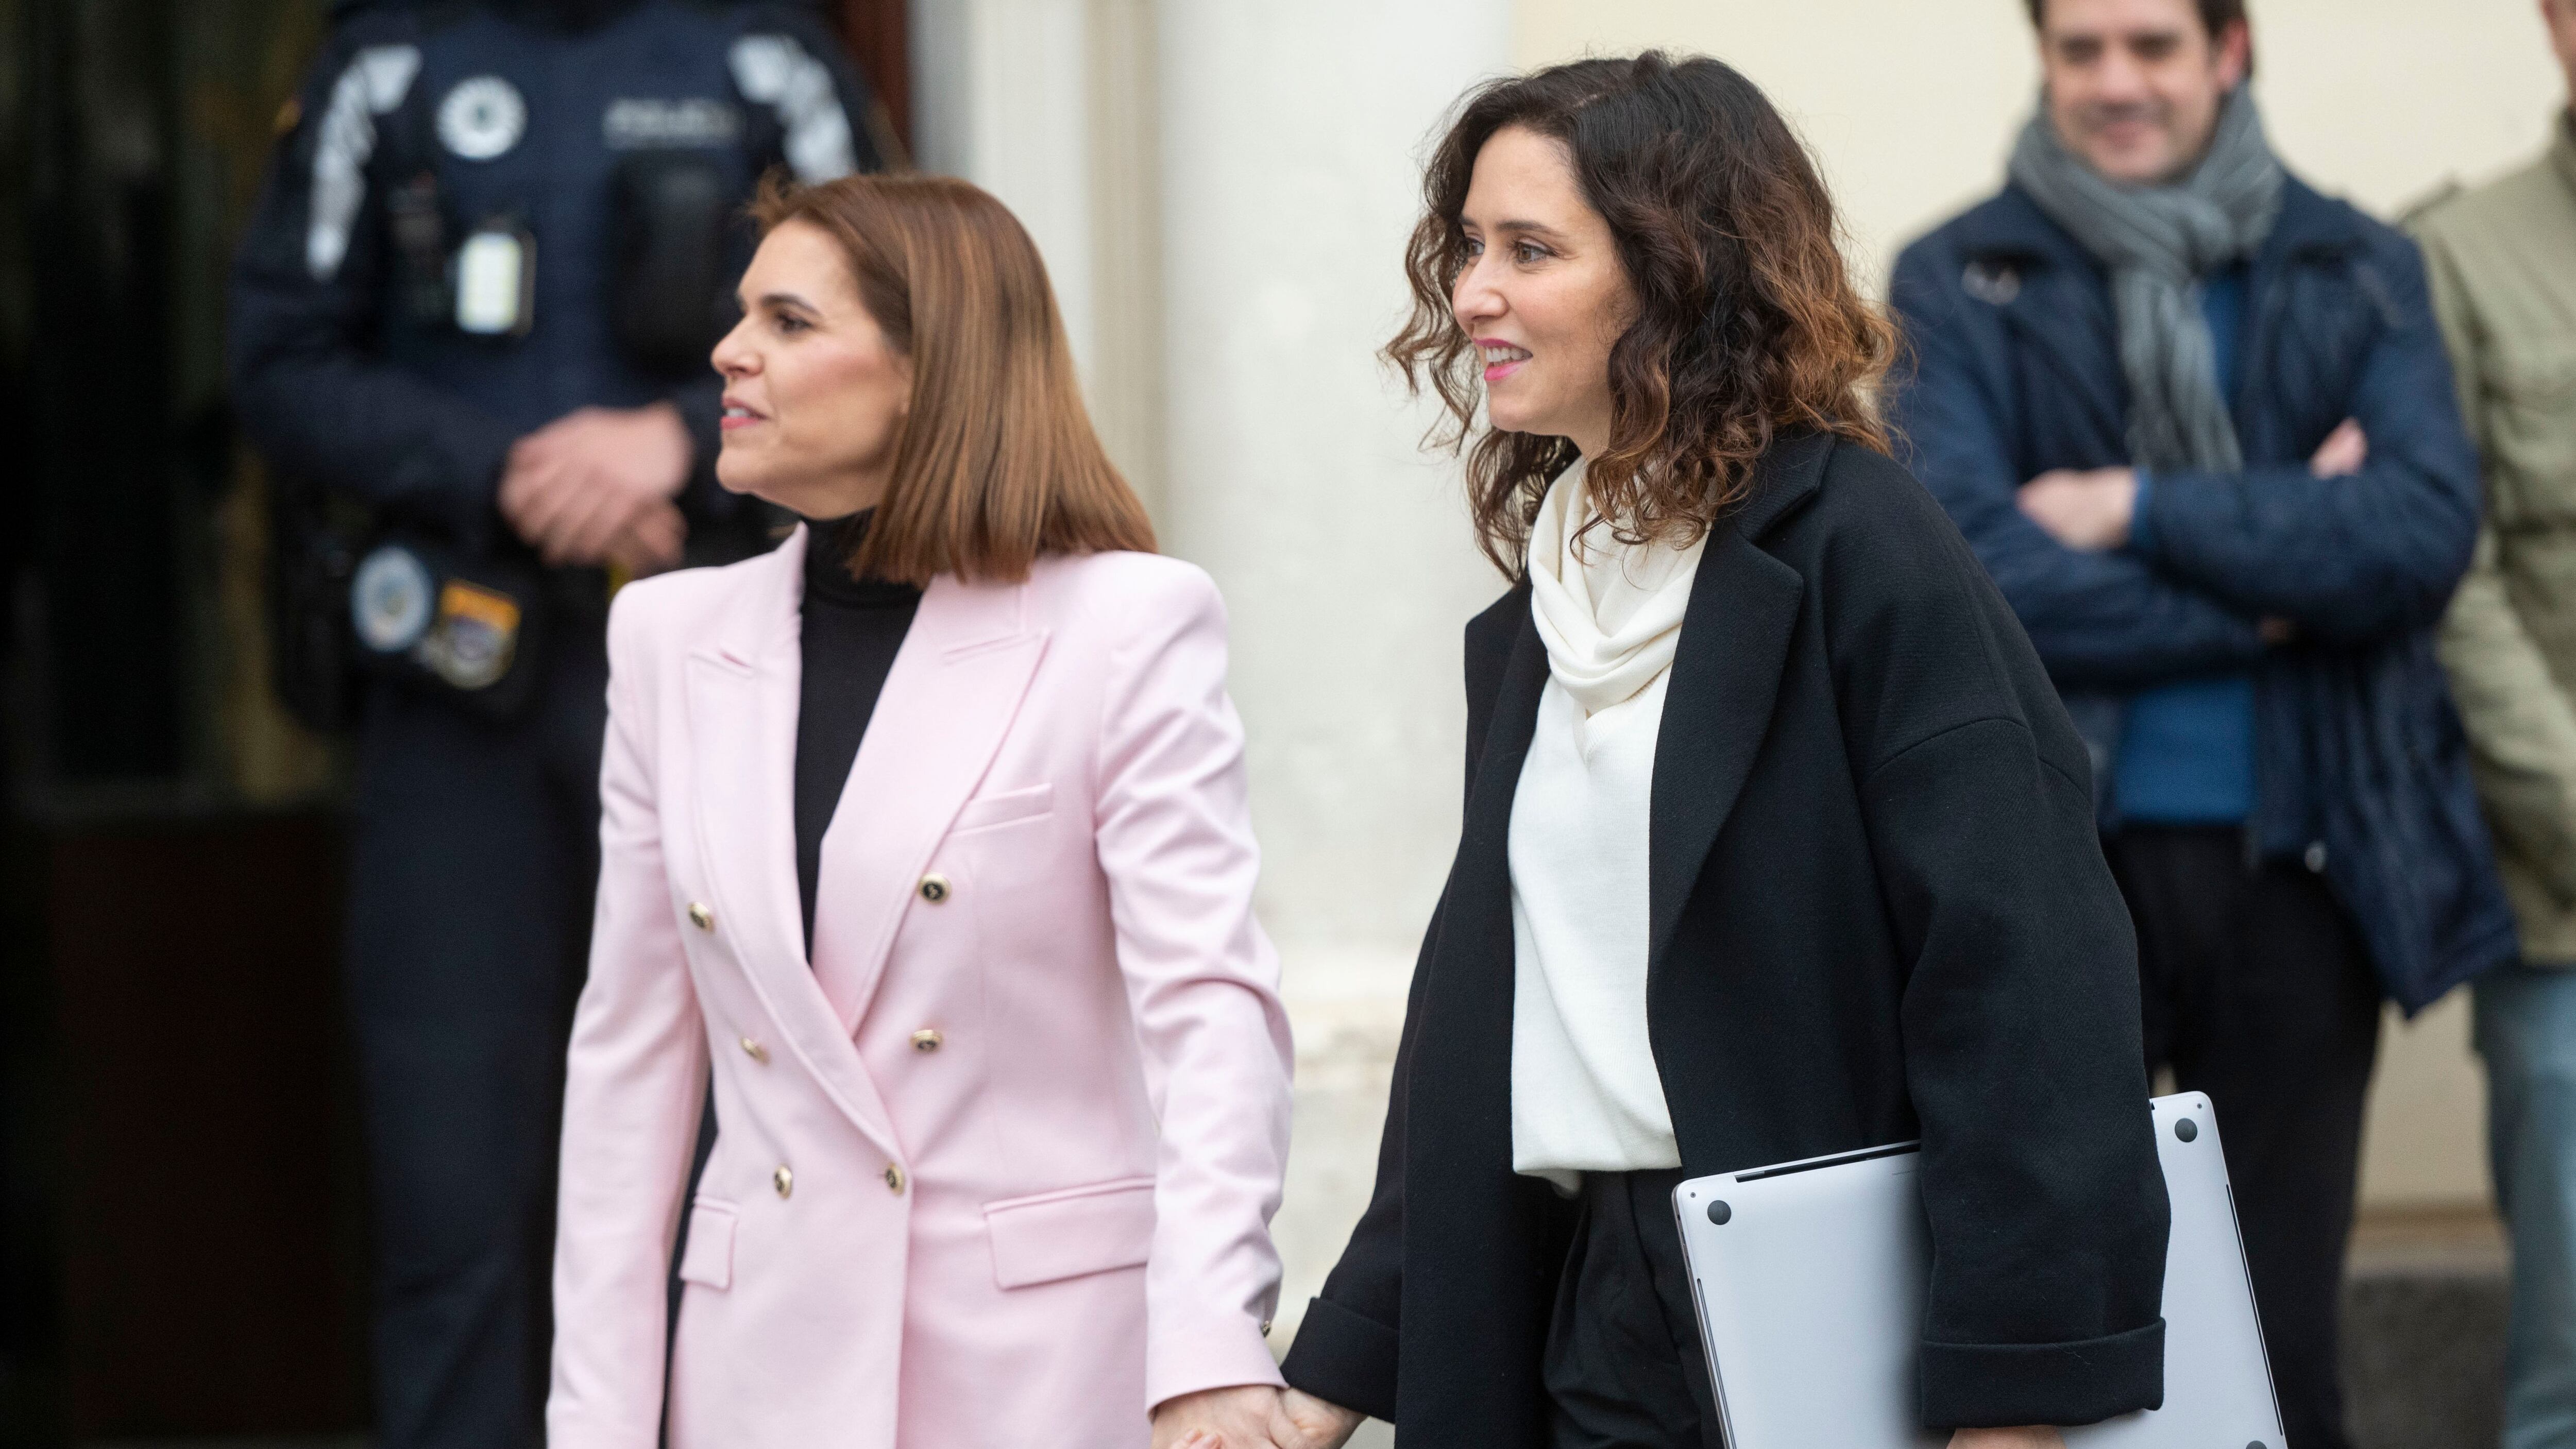 La presidenta de la Comunidad de Madrid, Isabel Díaz Ayuso, y la alcaldesa de Alcalá de Henares, Judith Piquet, agarradas de la mano antes de una reunión del Consejo de Gobierno.